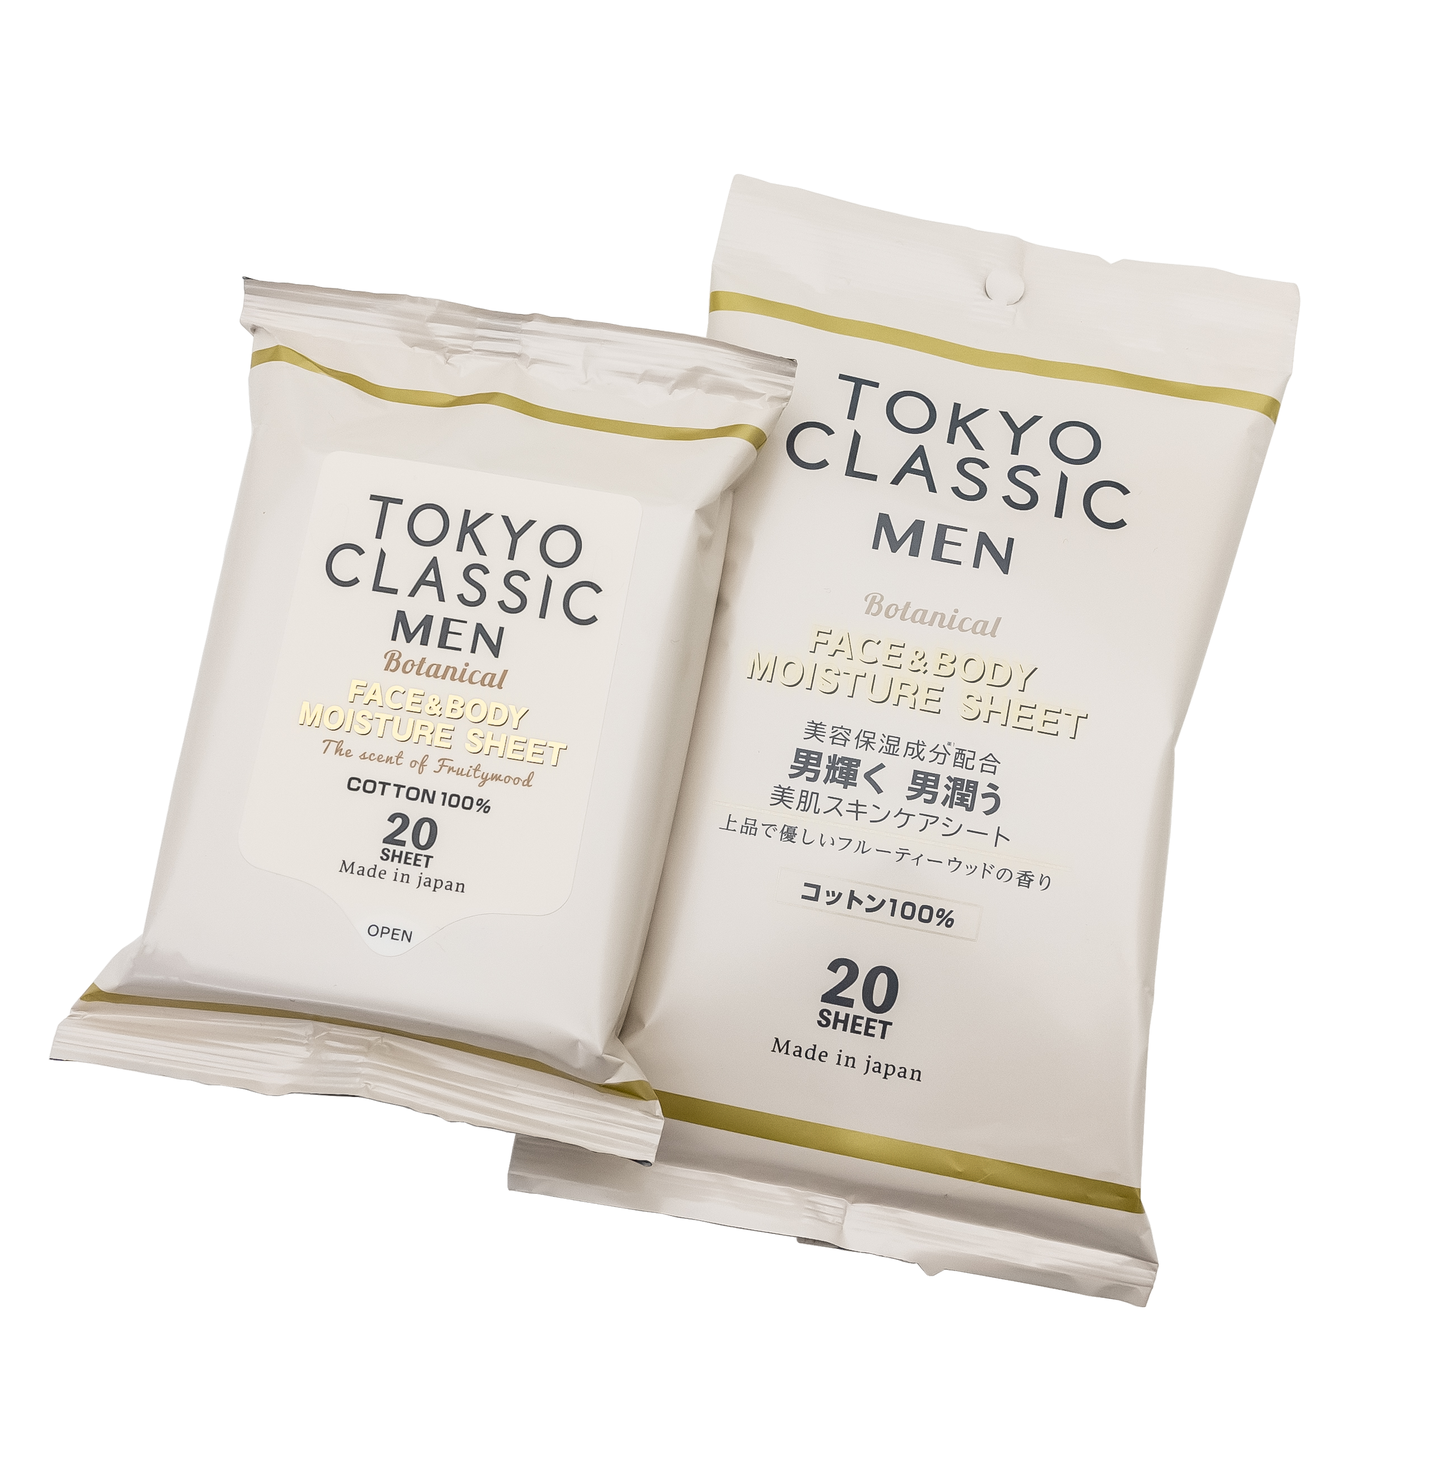 女性の要望から生まれたメンズコスメブランド Tokyo Classic Men より潤いと香りを与える保湿ケアシート 新登場 株式会社サルボのプレスリリース